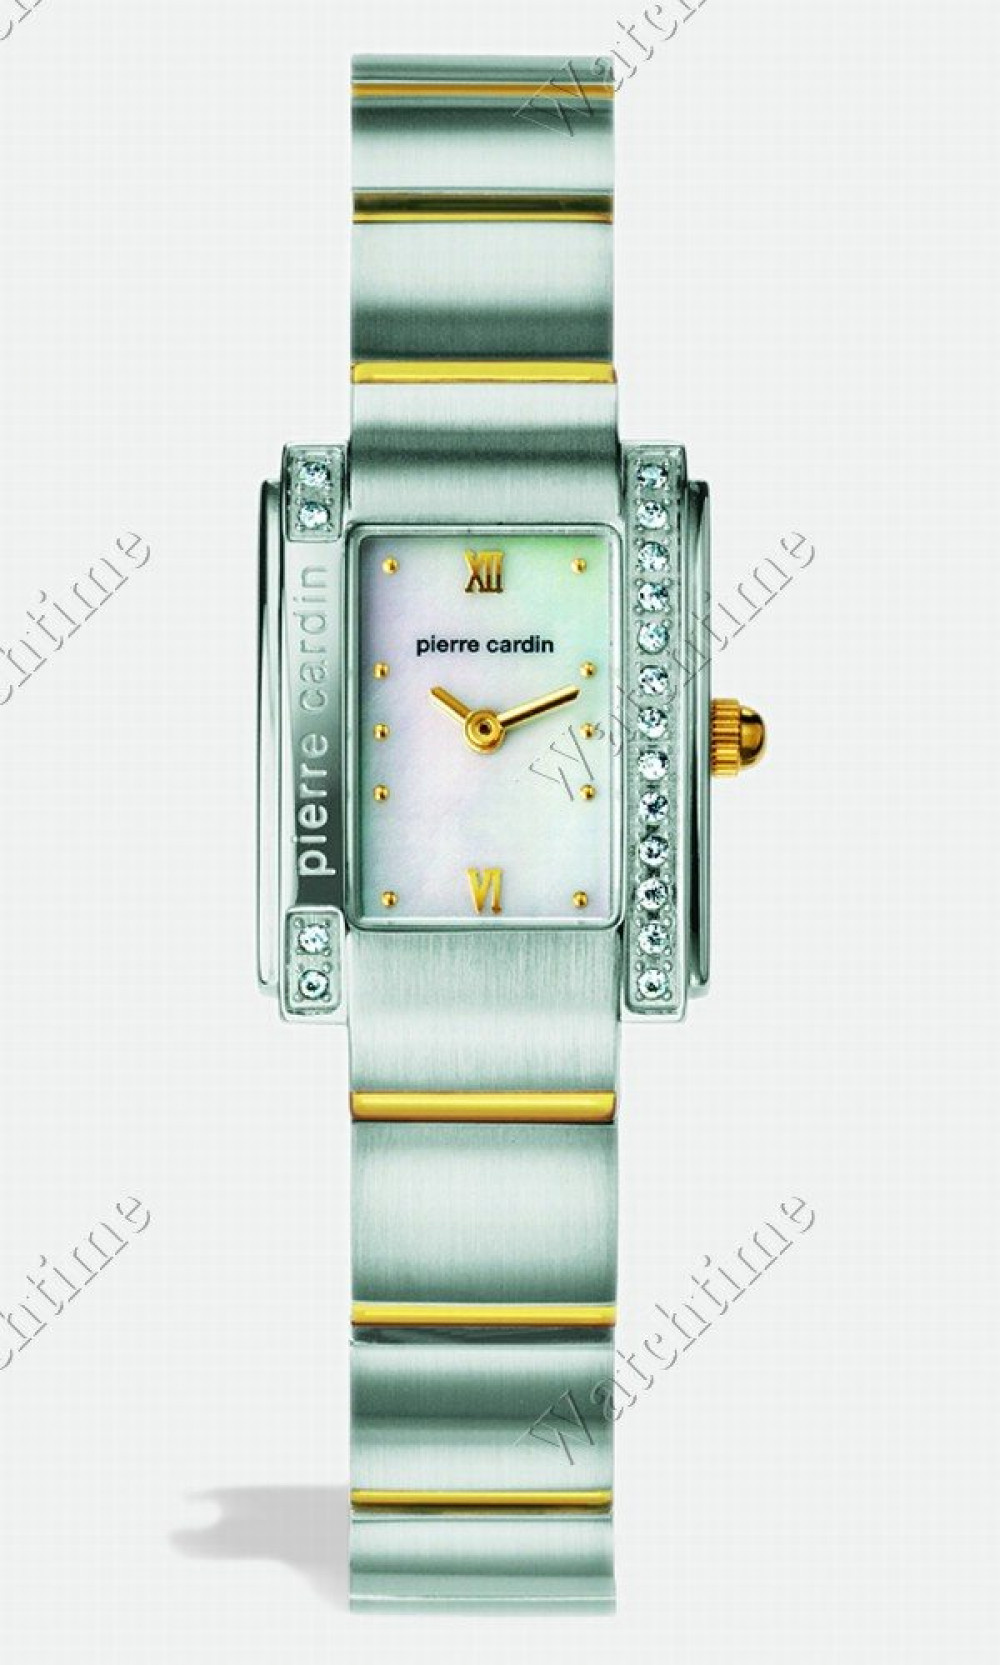 Zegarek firmy Pierre Cardin, model De Luxe